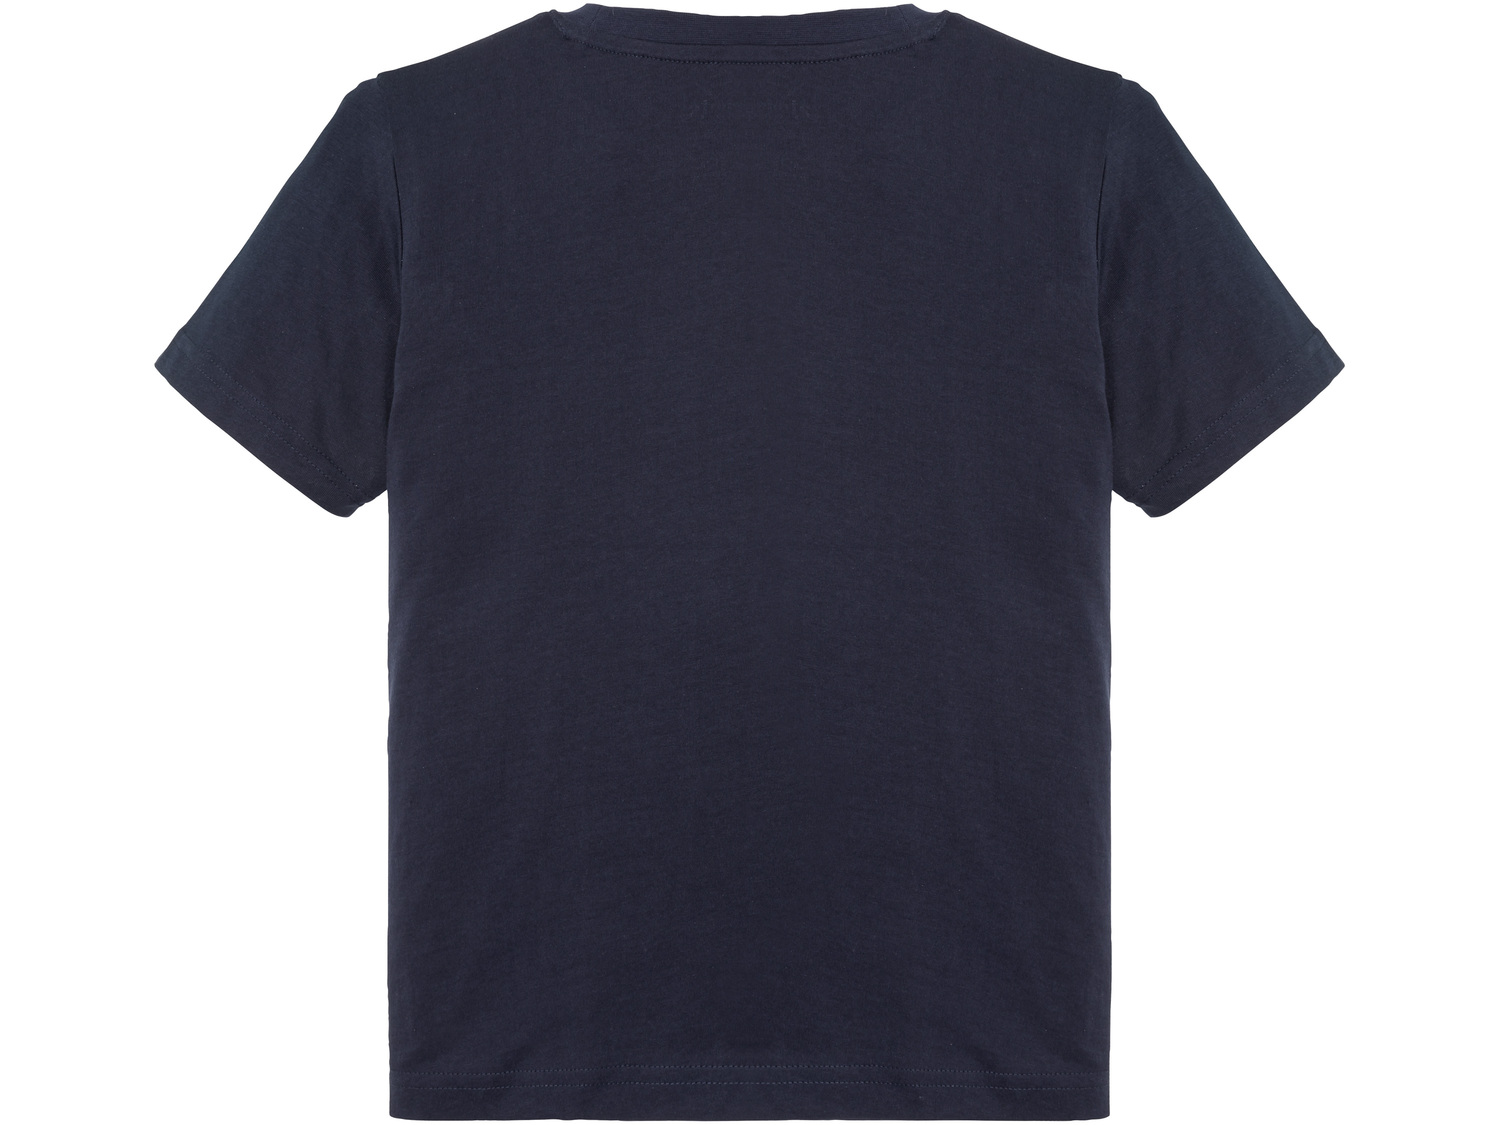 T-shirt chłopięcy Pepperts, cena 9,99 PLN 
- rozmiary: 134-152
- 100% bawełny
Dostępne ...